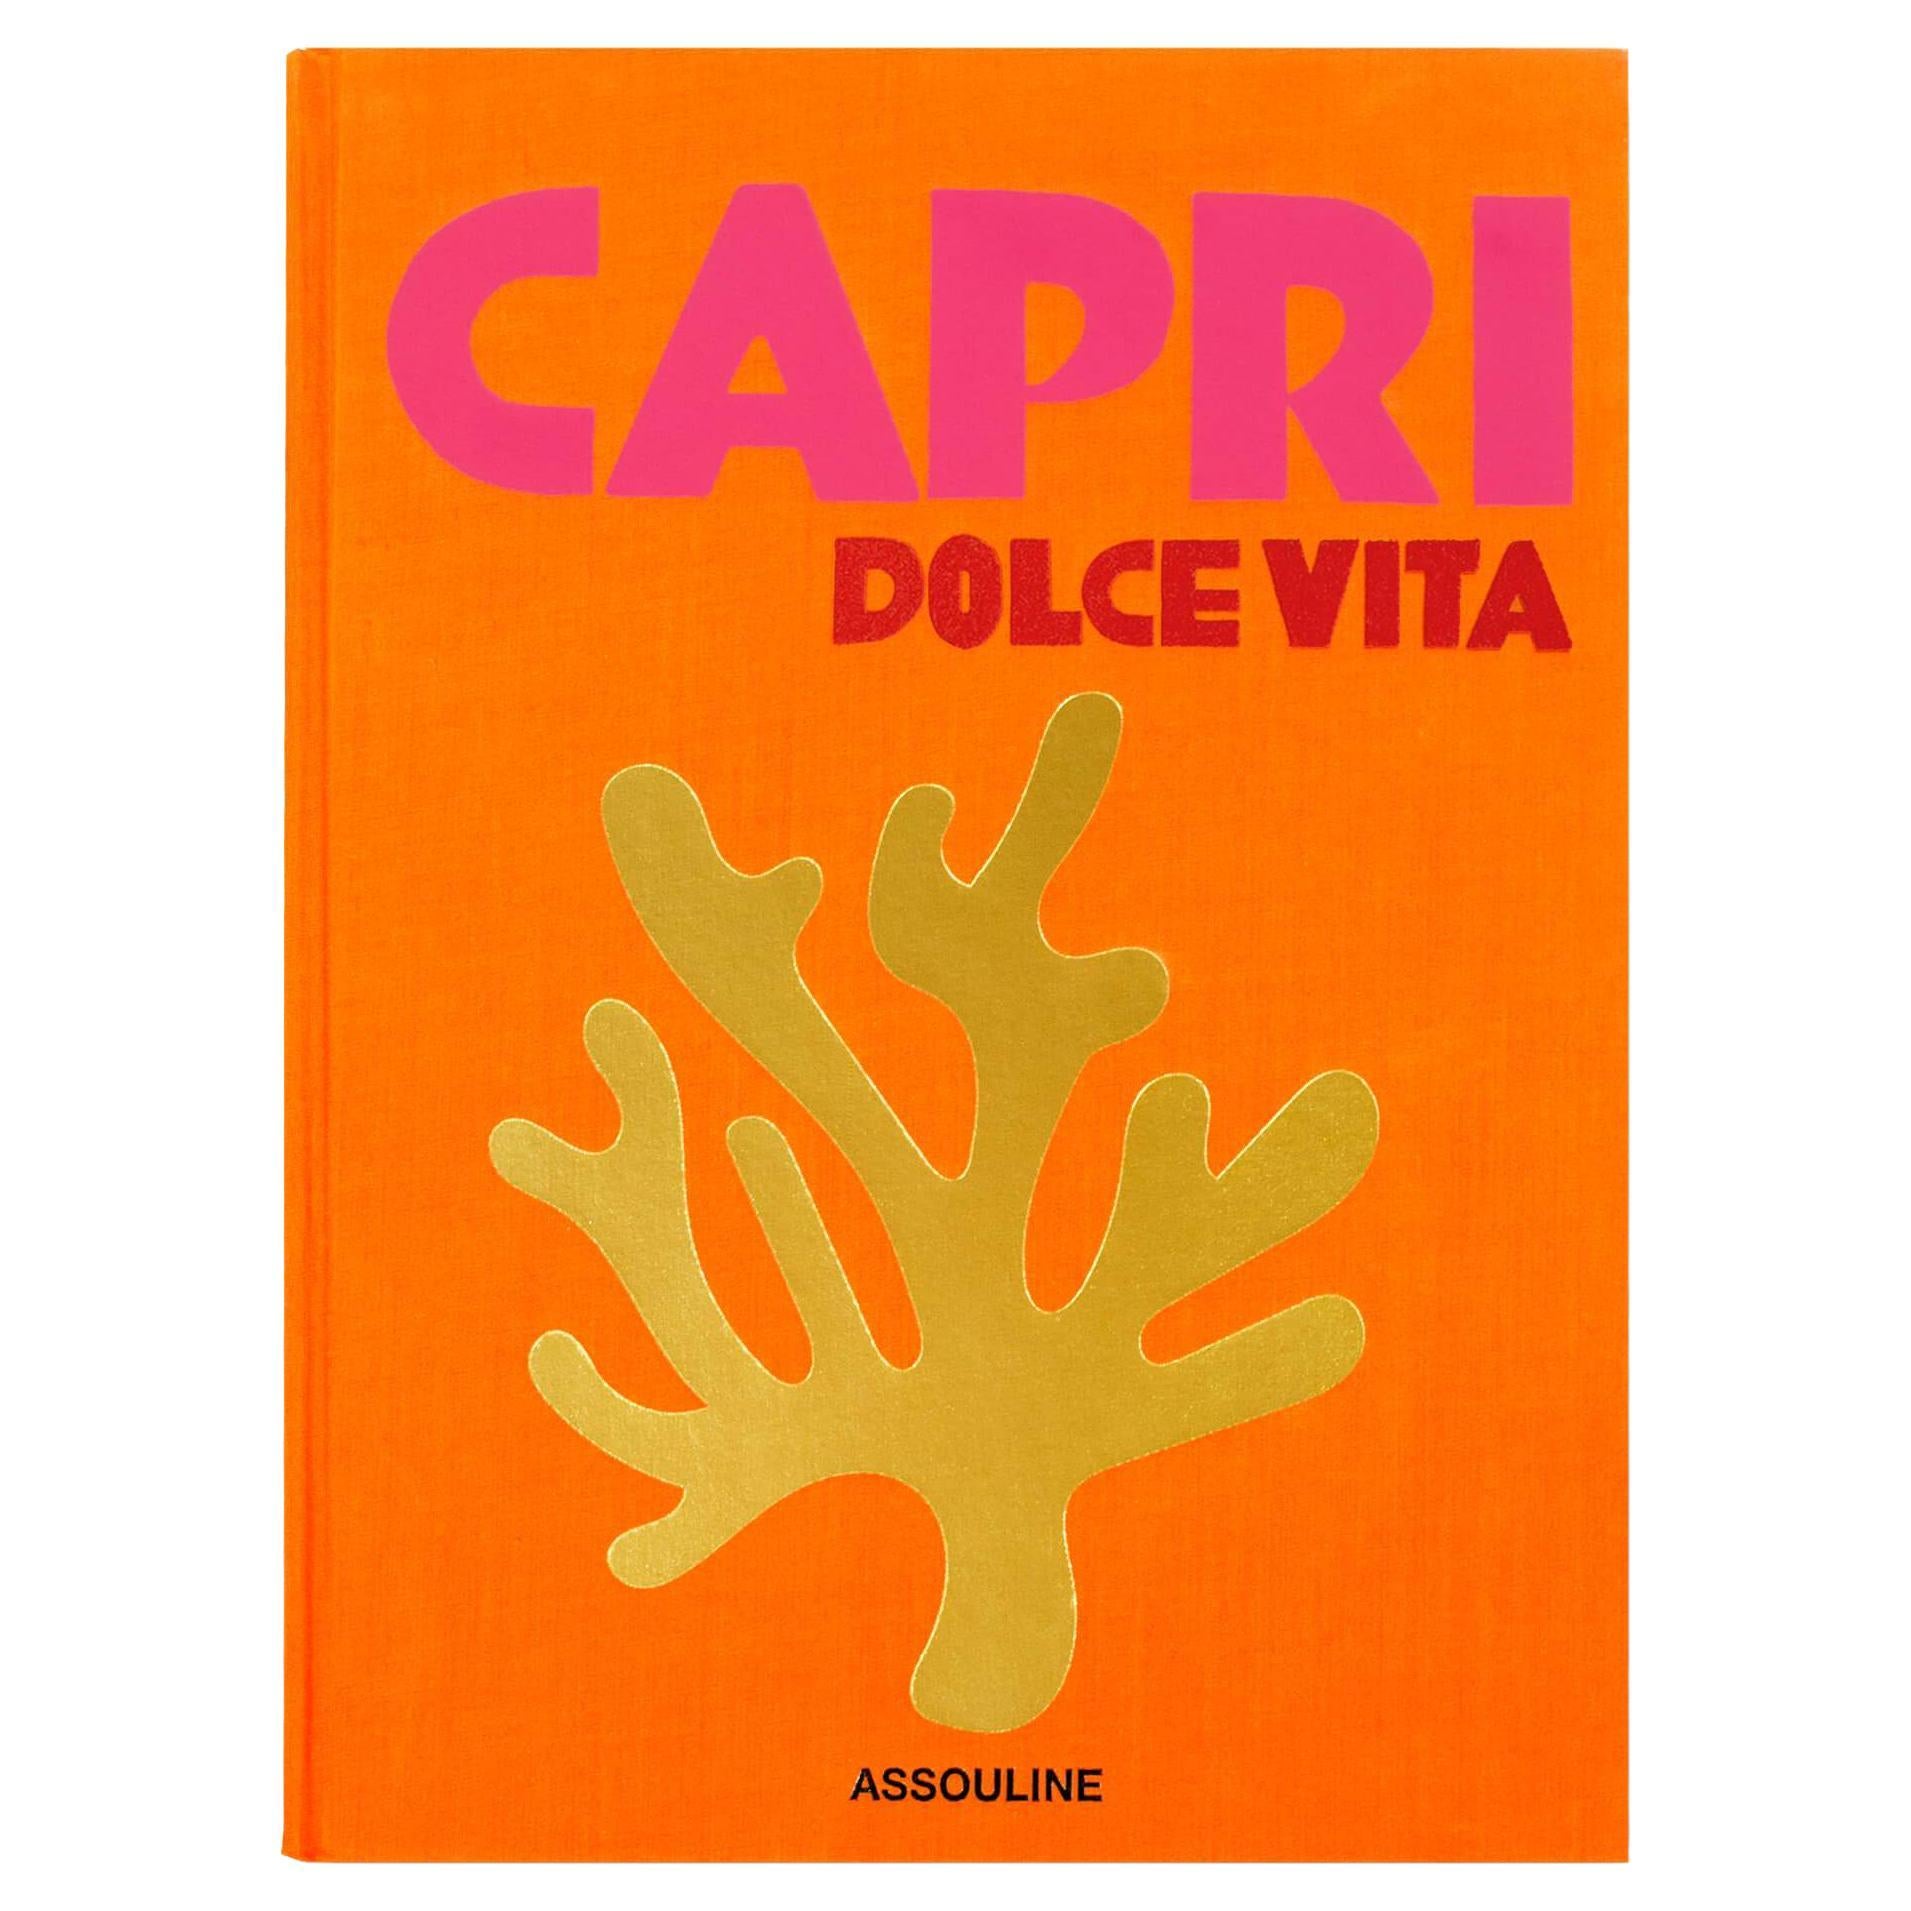 In Stock in Los Angeles, Capri Dolce Vita by Cesare Cunaccia